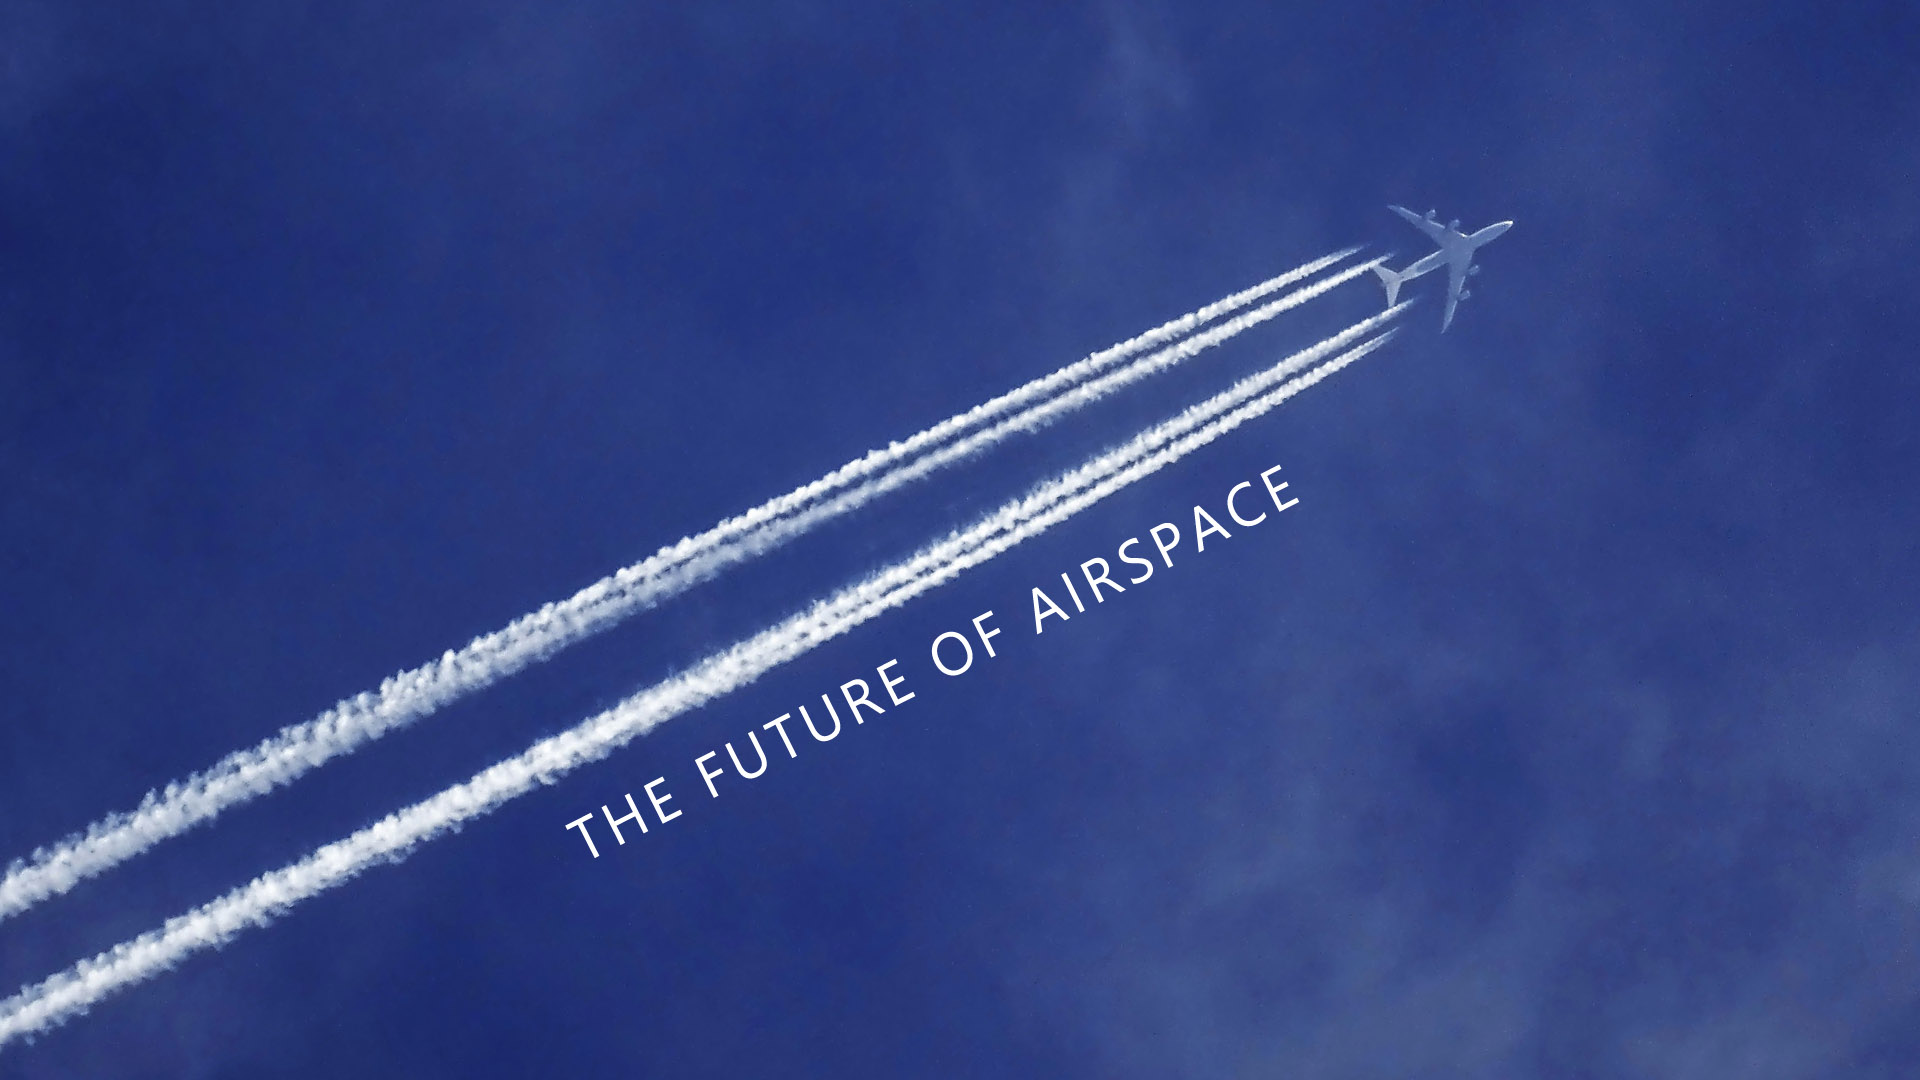 Future of Airspace, Dubai